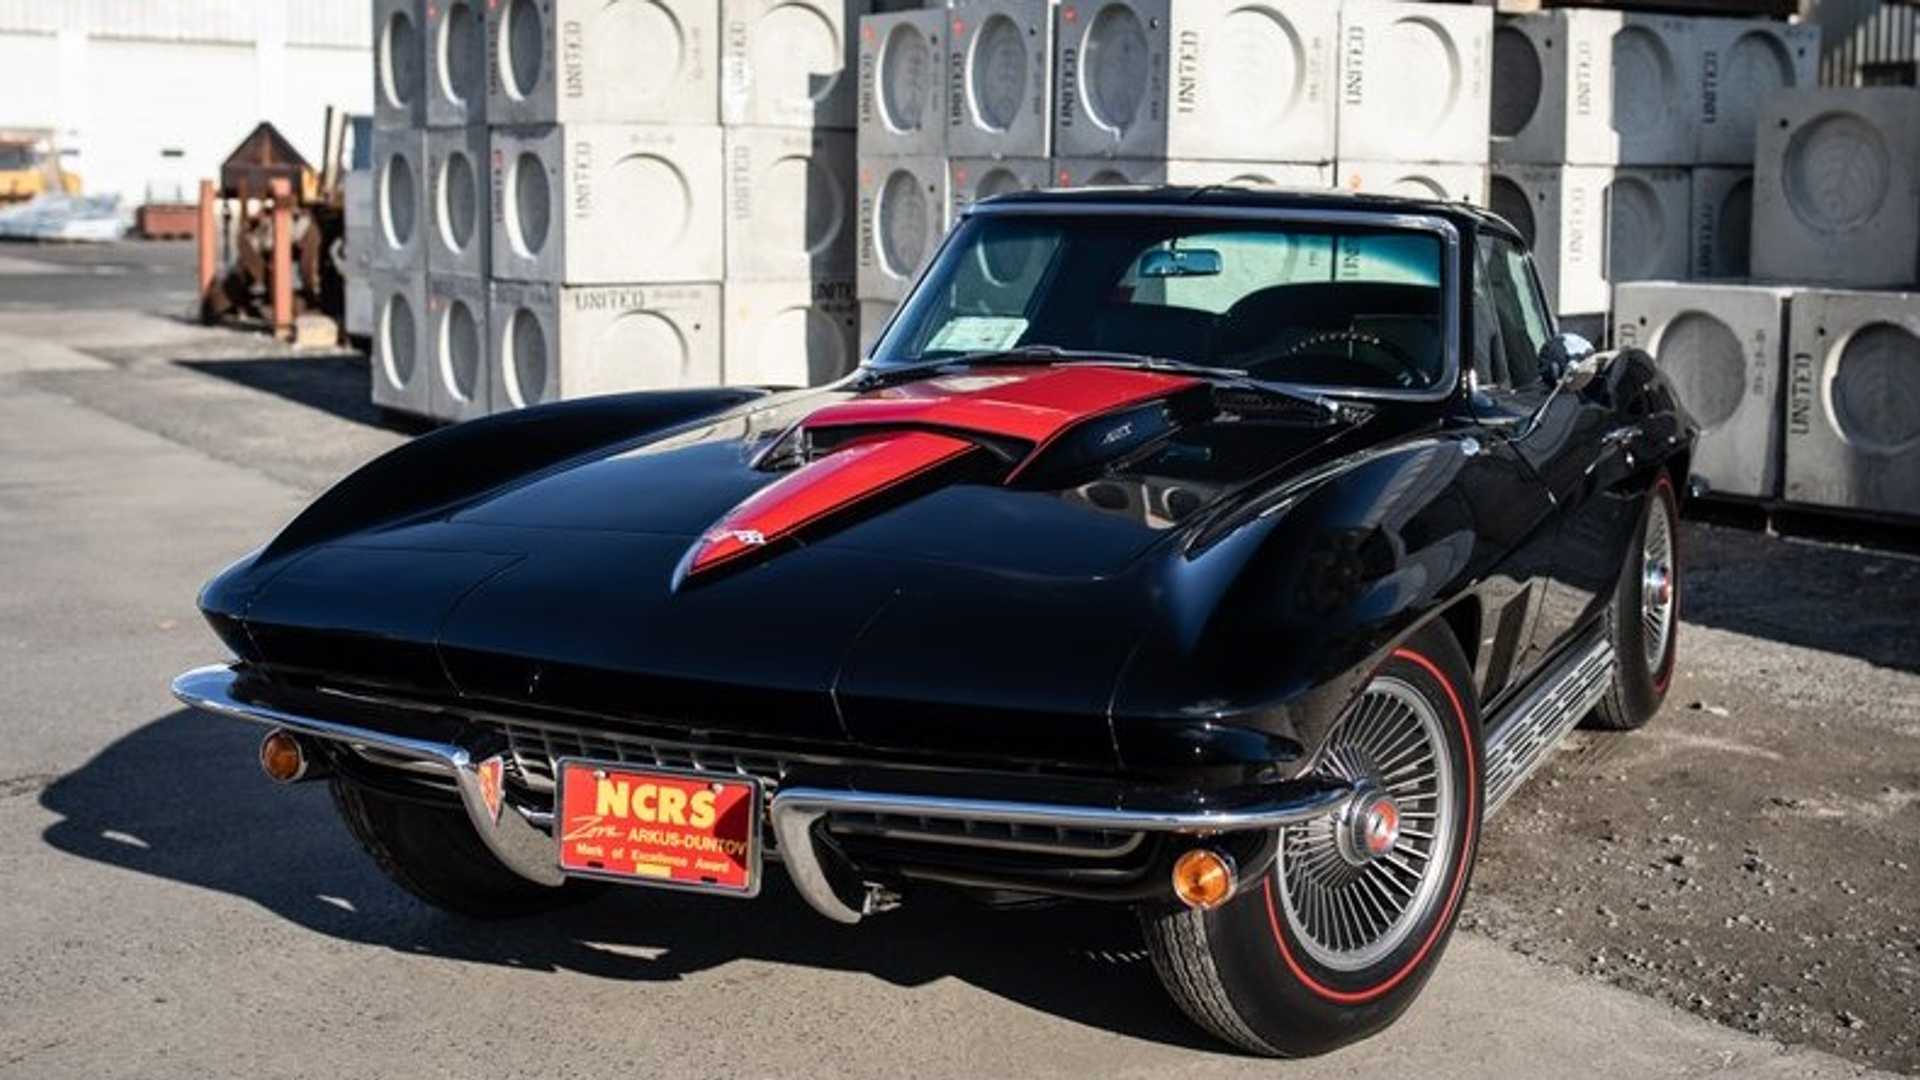 Vintage beauty: '66 Chevy Corvette, a classic masterpiece.